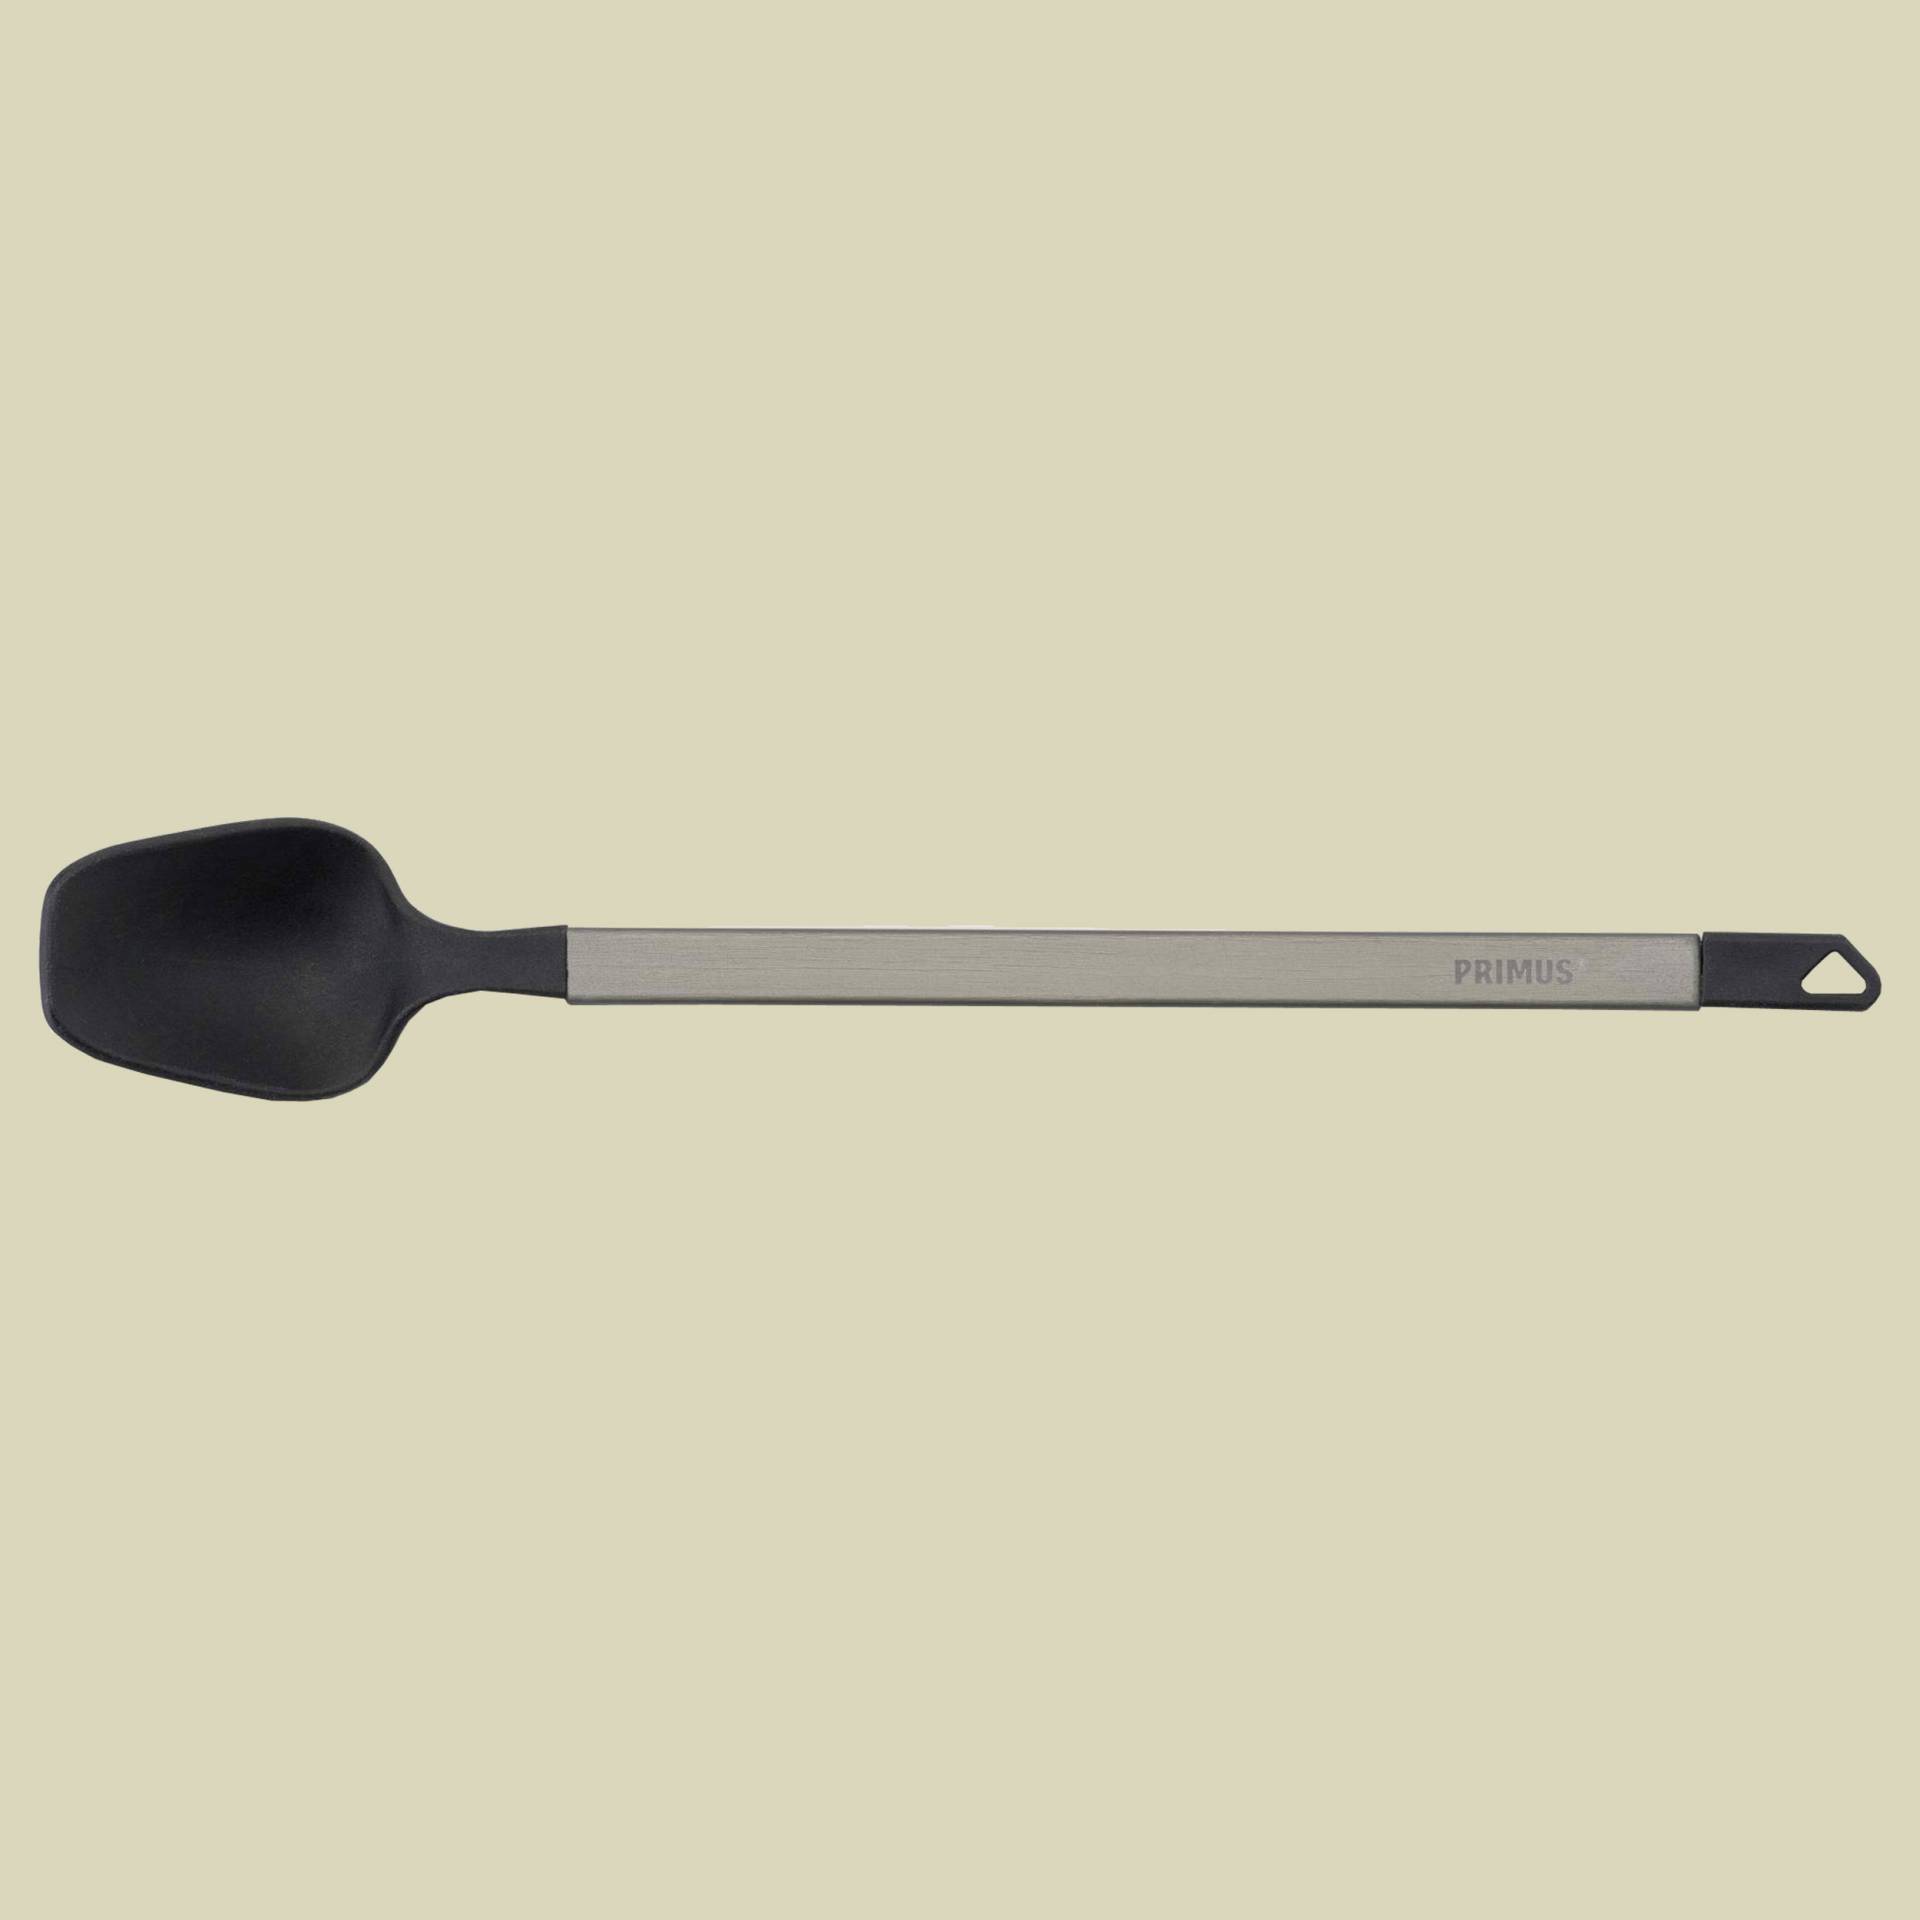 Longspoon Größe one size Farbe black von Primus